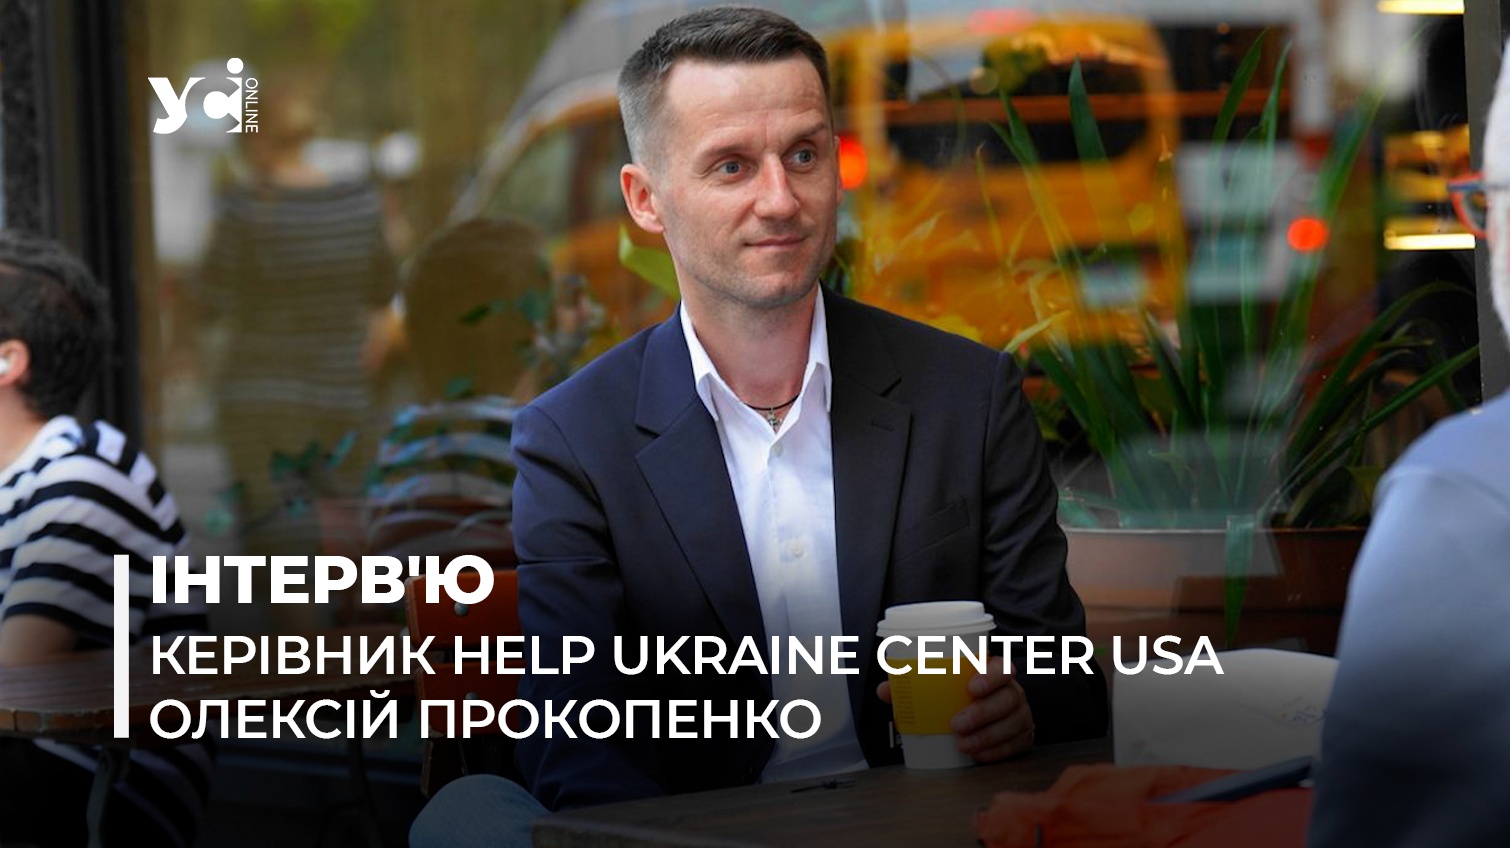 Українці в Америці зобов’язані допомогти Україні пережити важкі часи, – волонтер «фото»